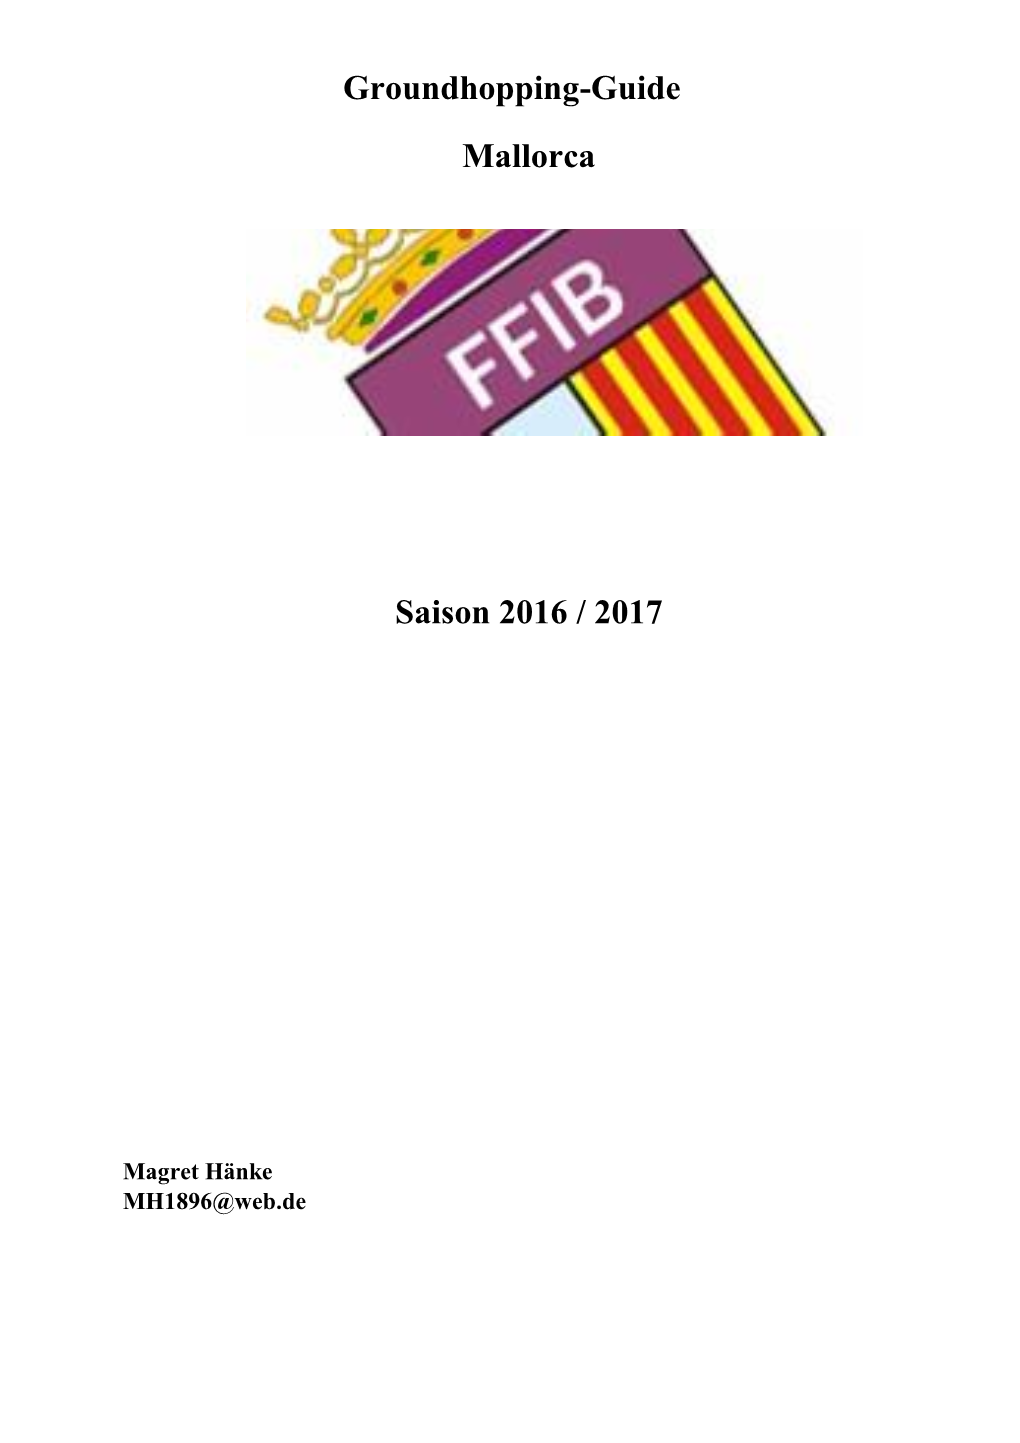 Groundhopping-Guide Mallorca Saison 2016 / 2017